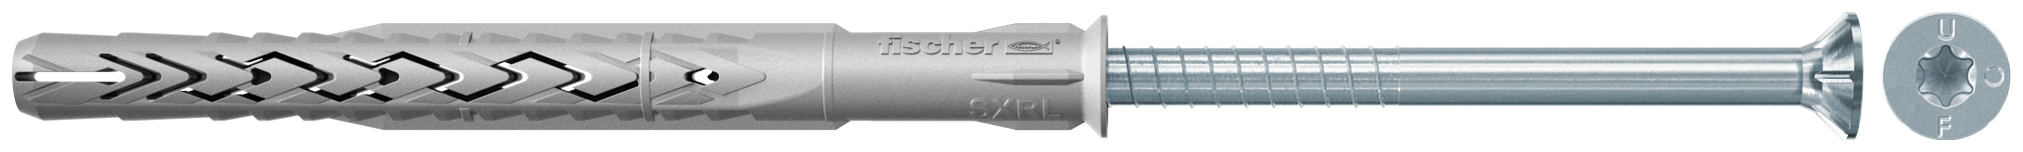 fischer Tasselli prolungati SXRL 14X230 T (1 Pz.) Tassello prolungato in nylon con marcatura CE con vite premontata T.S.P. impronta torx.